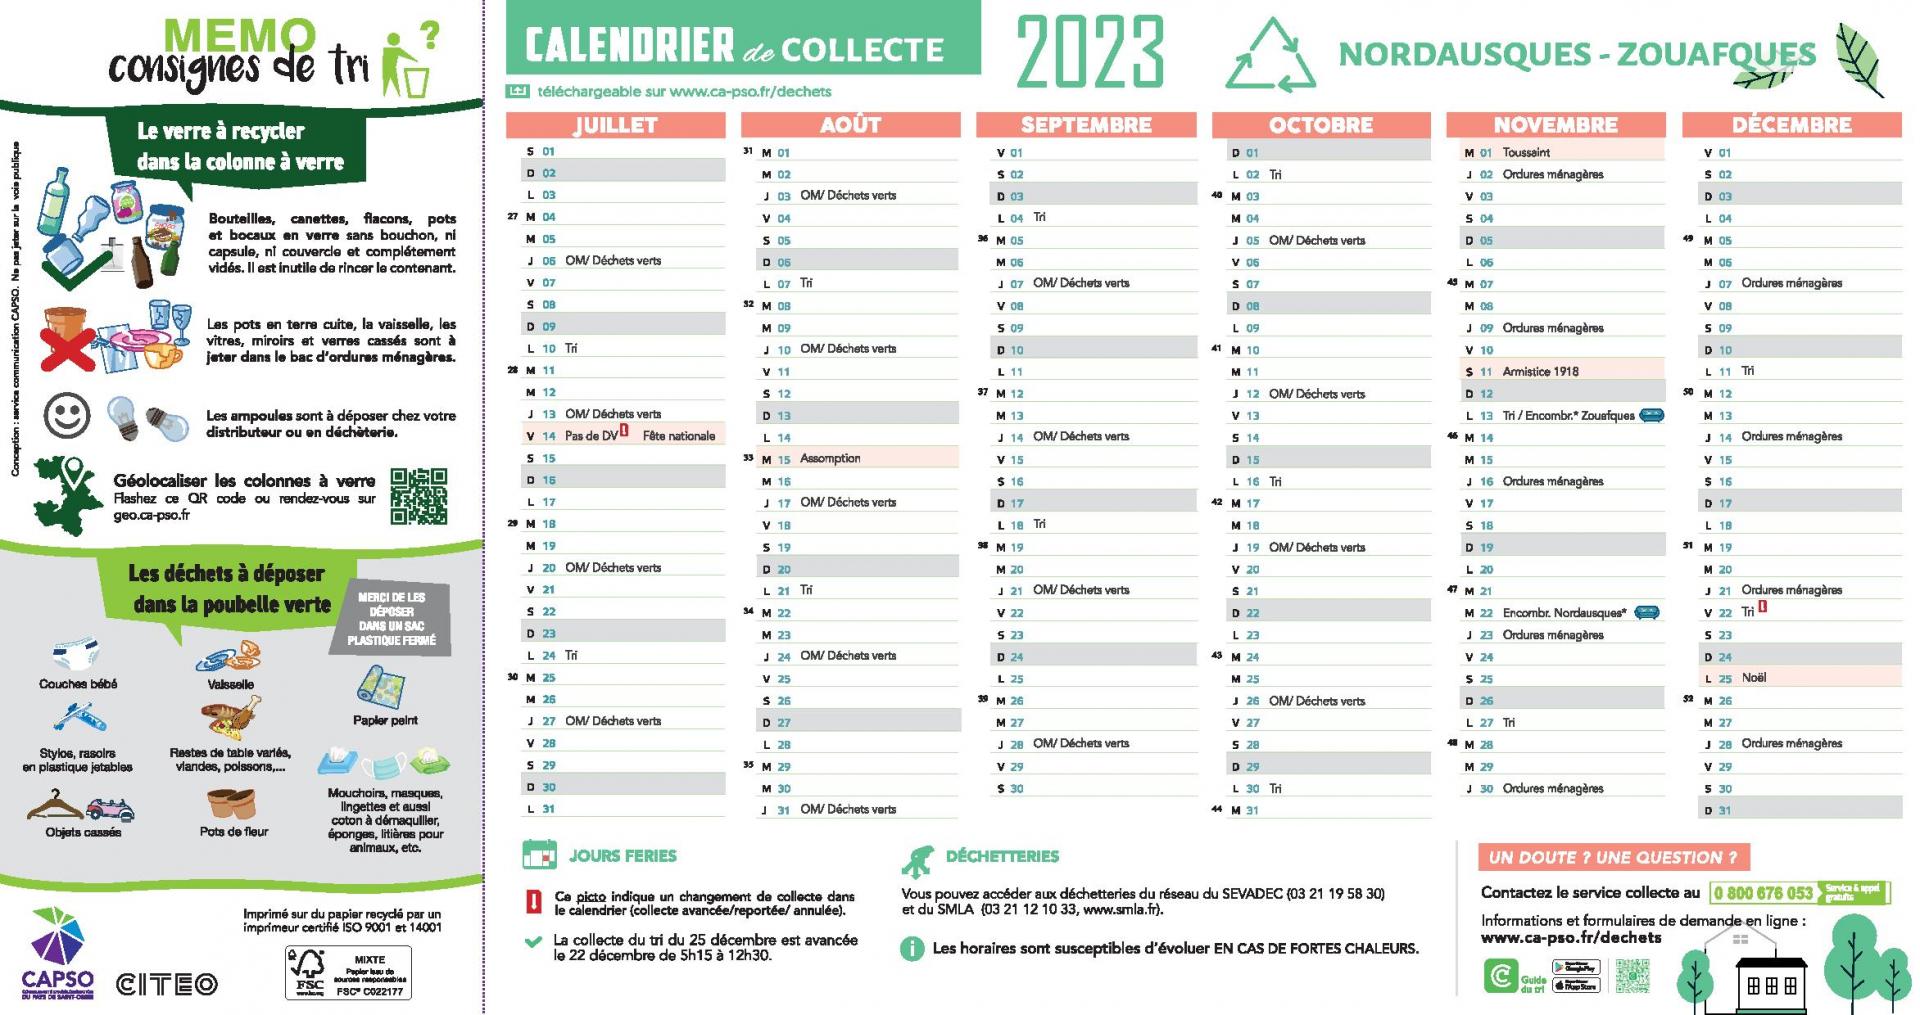 Nordausques zouafques calendrier de collecte 2023 page 002